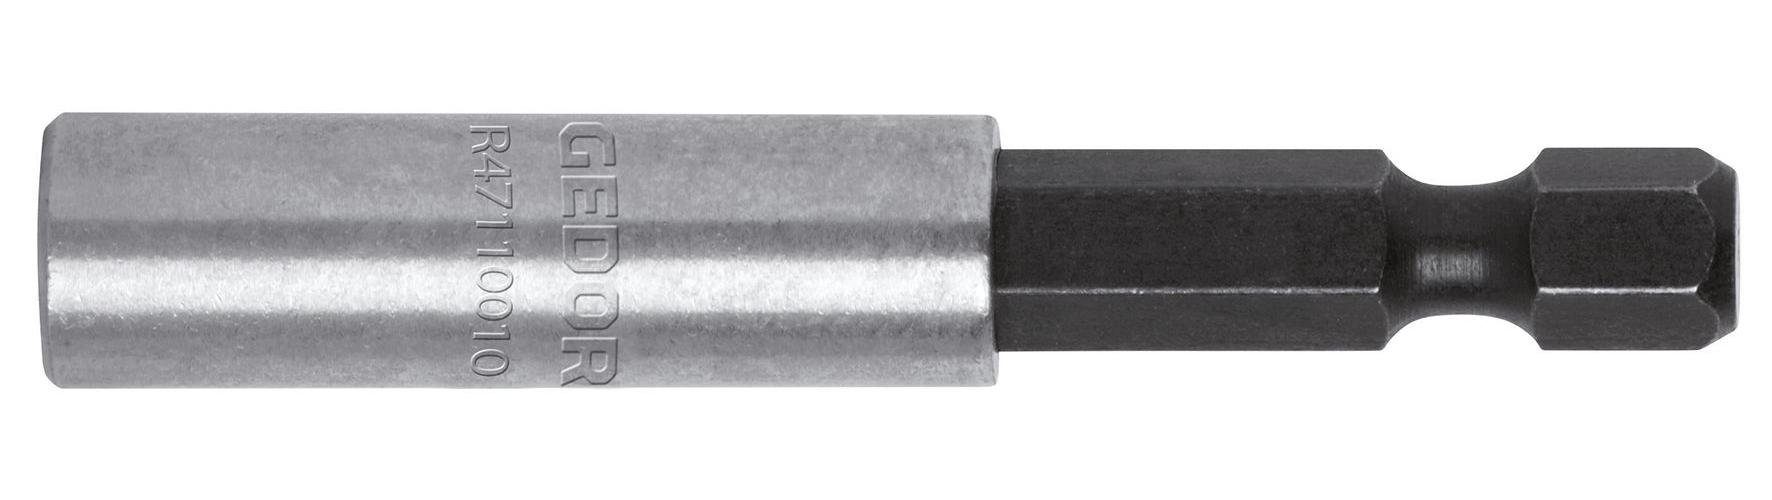 Gedore Red Ratschenringschlüssel R47110011 Bithalter 1/4 6-kant x 1/4 6-kant magnetisch 60 mm | Ratschenschlüssel